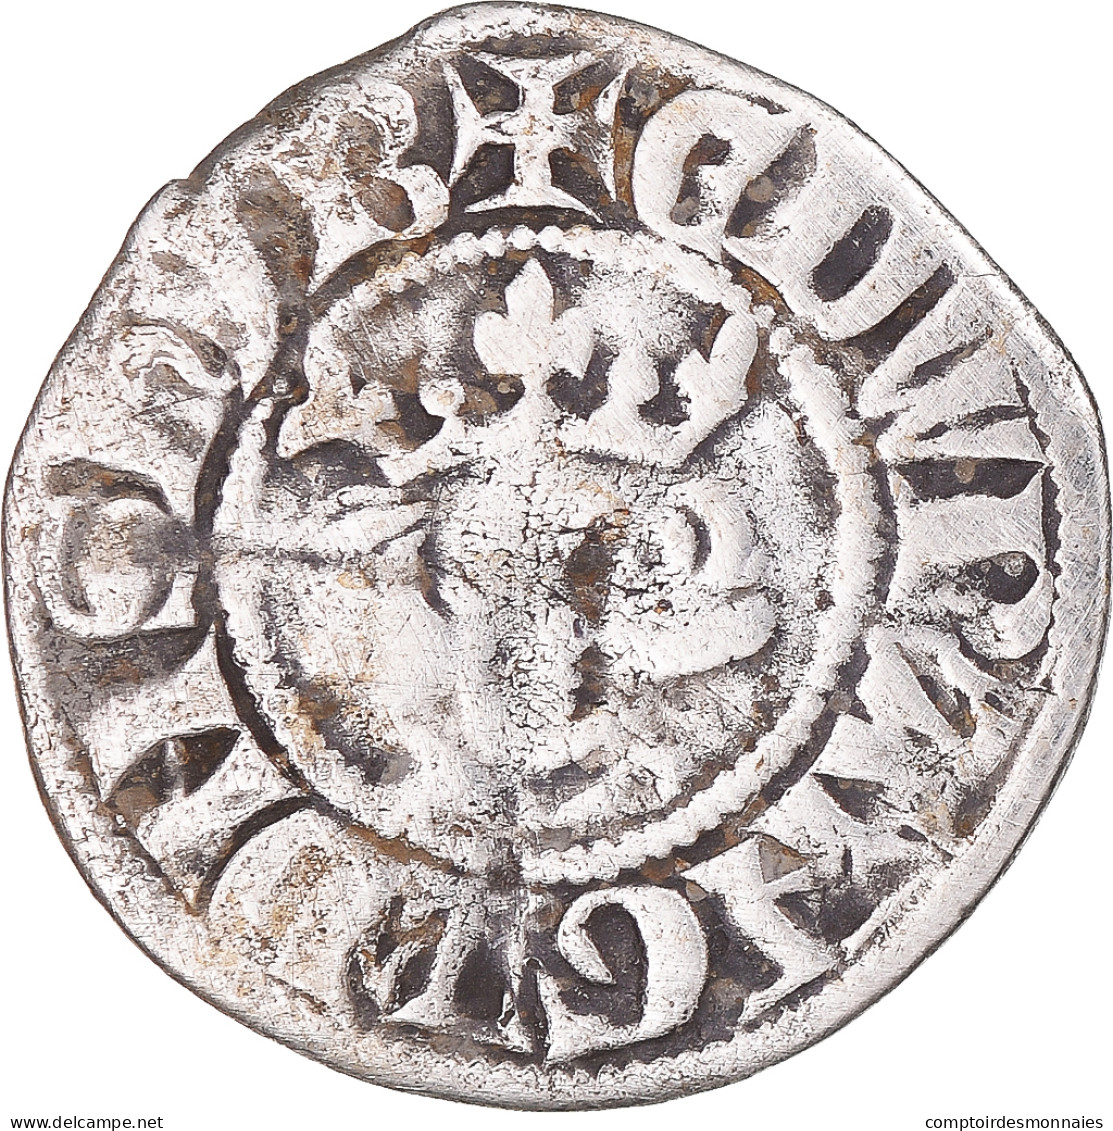 Monnaie, Grande-Bretagne, Edward I, II, III, Penny, Canterbury, TB+, Argent - 1066-1485 : Bas Moyen-Age